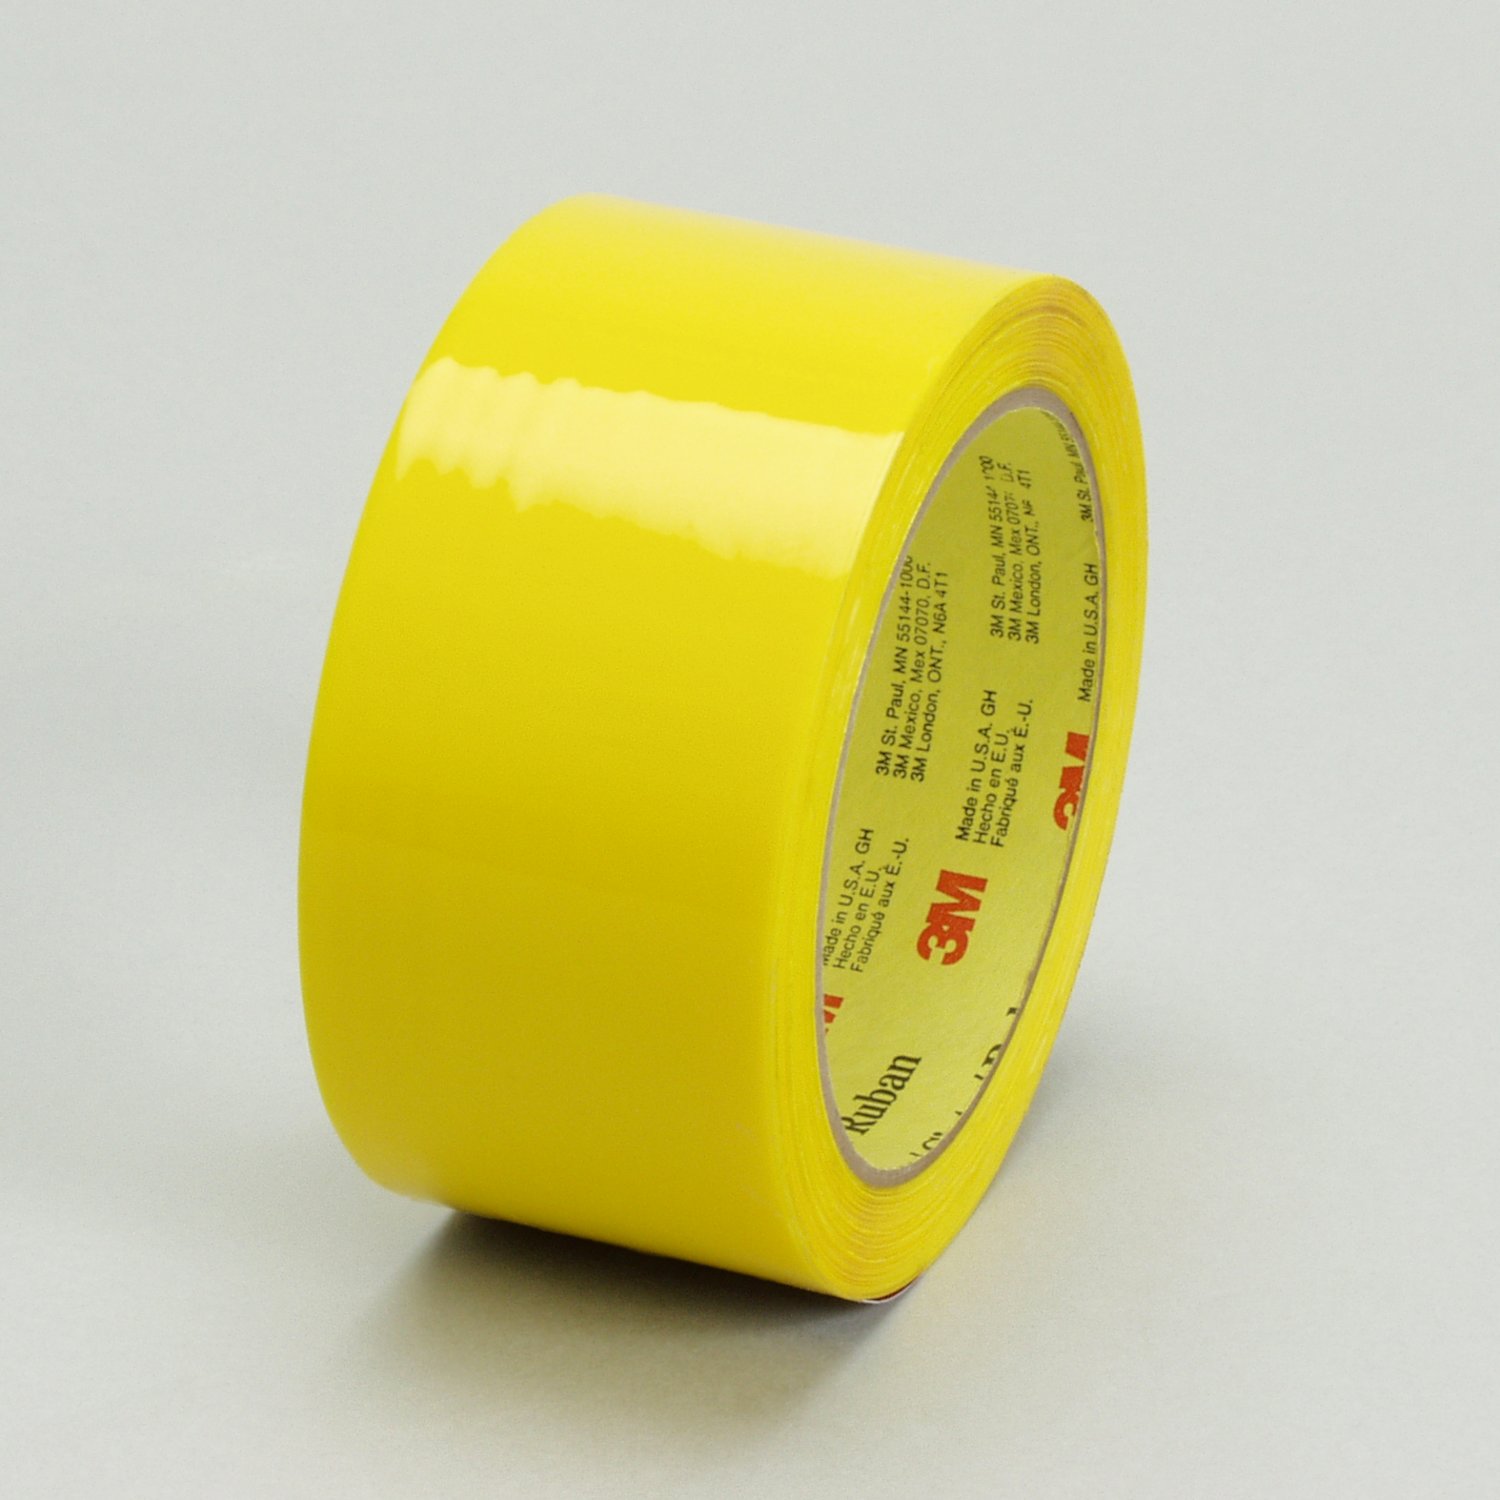 7010312138 - Scotch Box Sealing Tape 371, Yellow, 48 mm x 914 m, 6/Case